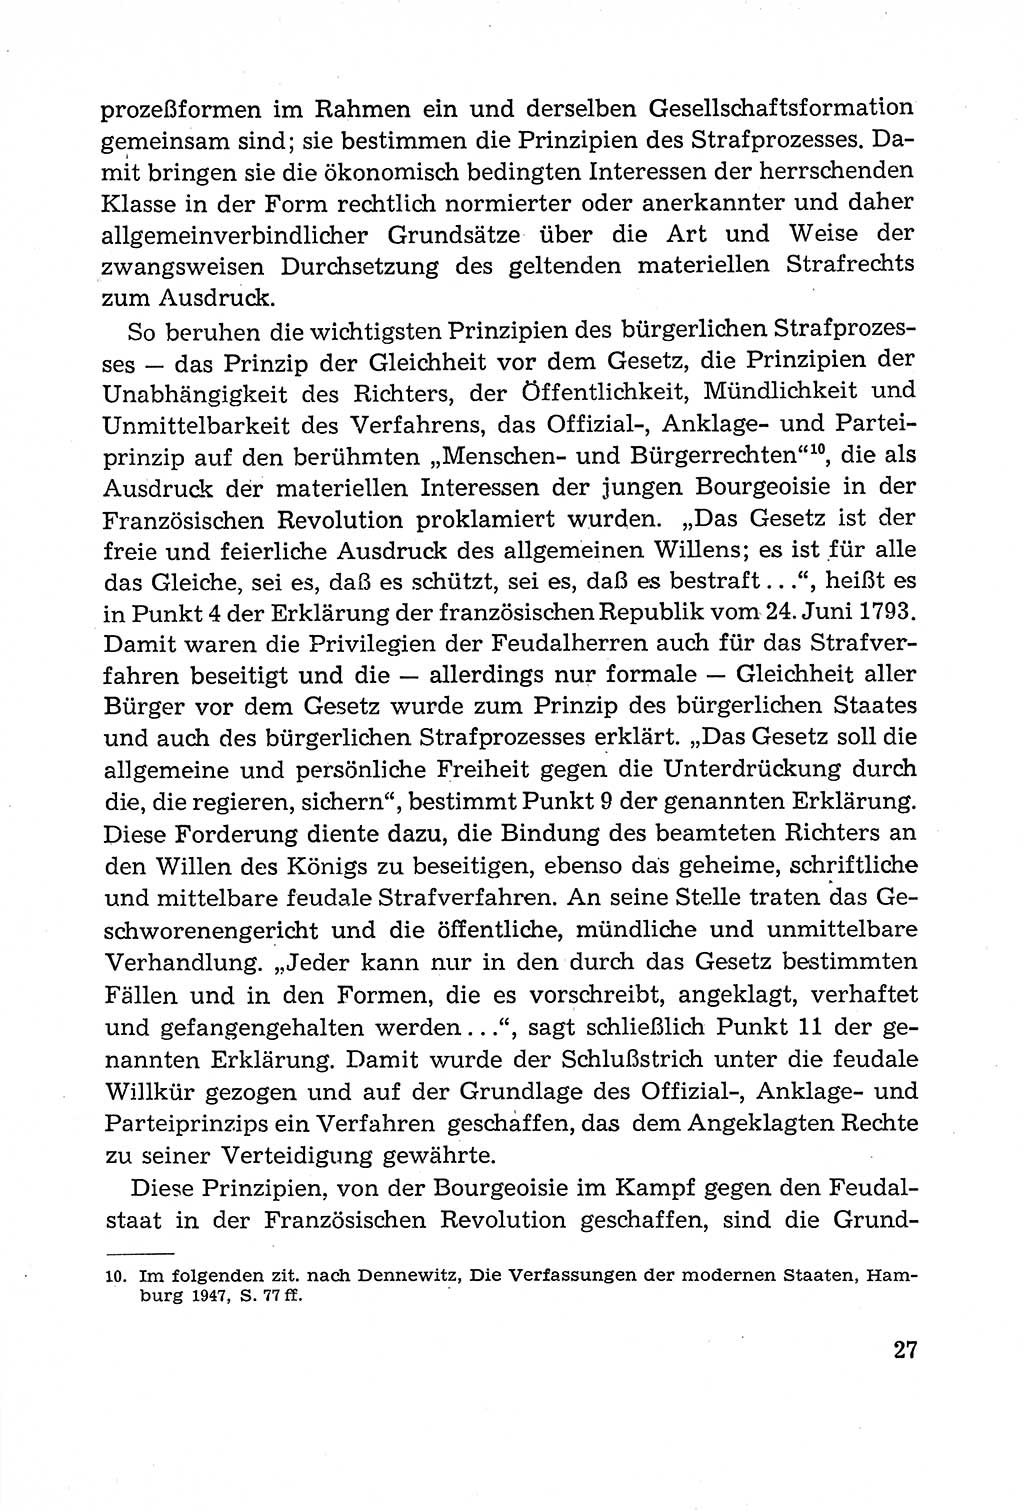 Leitfaden des Strafprozeßrechts der Deutschen Demokratischen Republik (DDR) 1959, Seite 27 (LF StPR DDR 1959, S. 27)